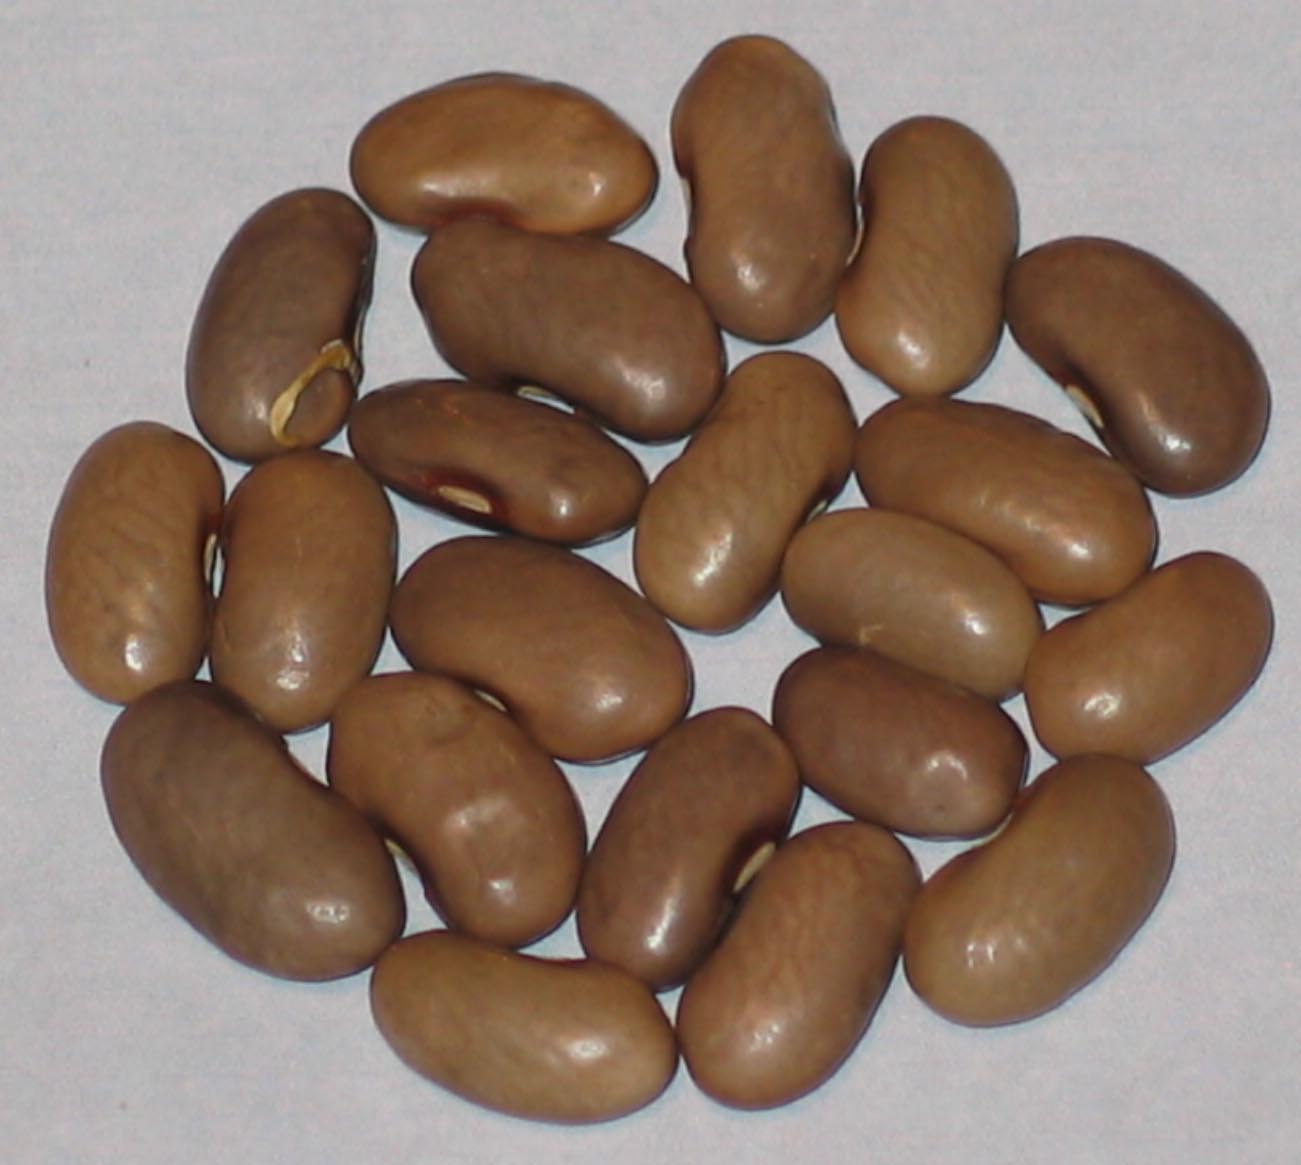 image of Belgium beans